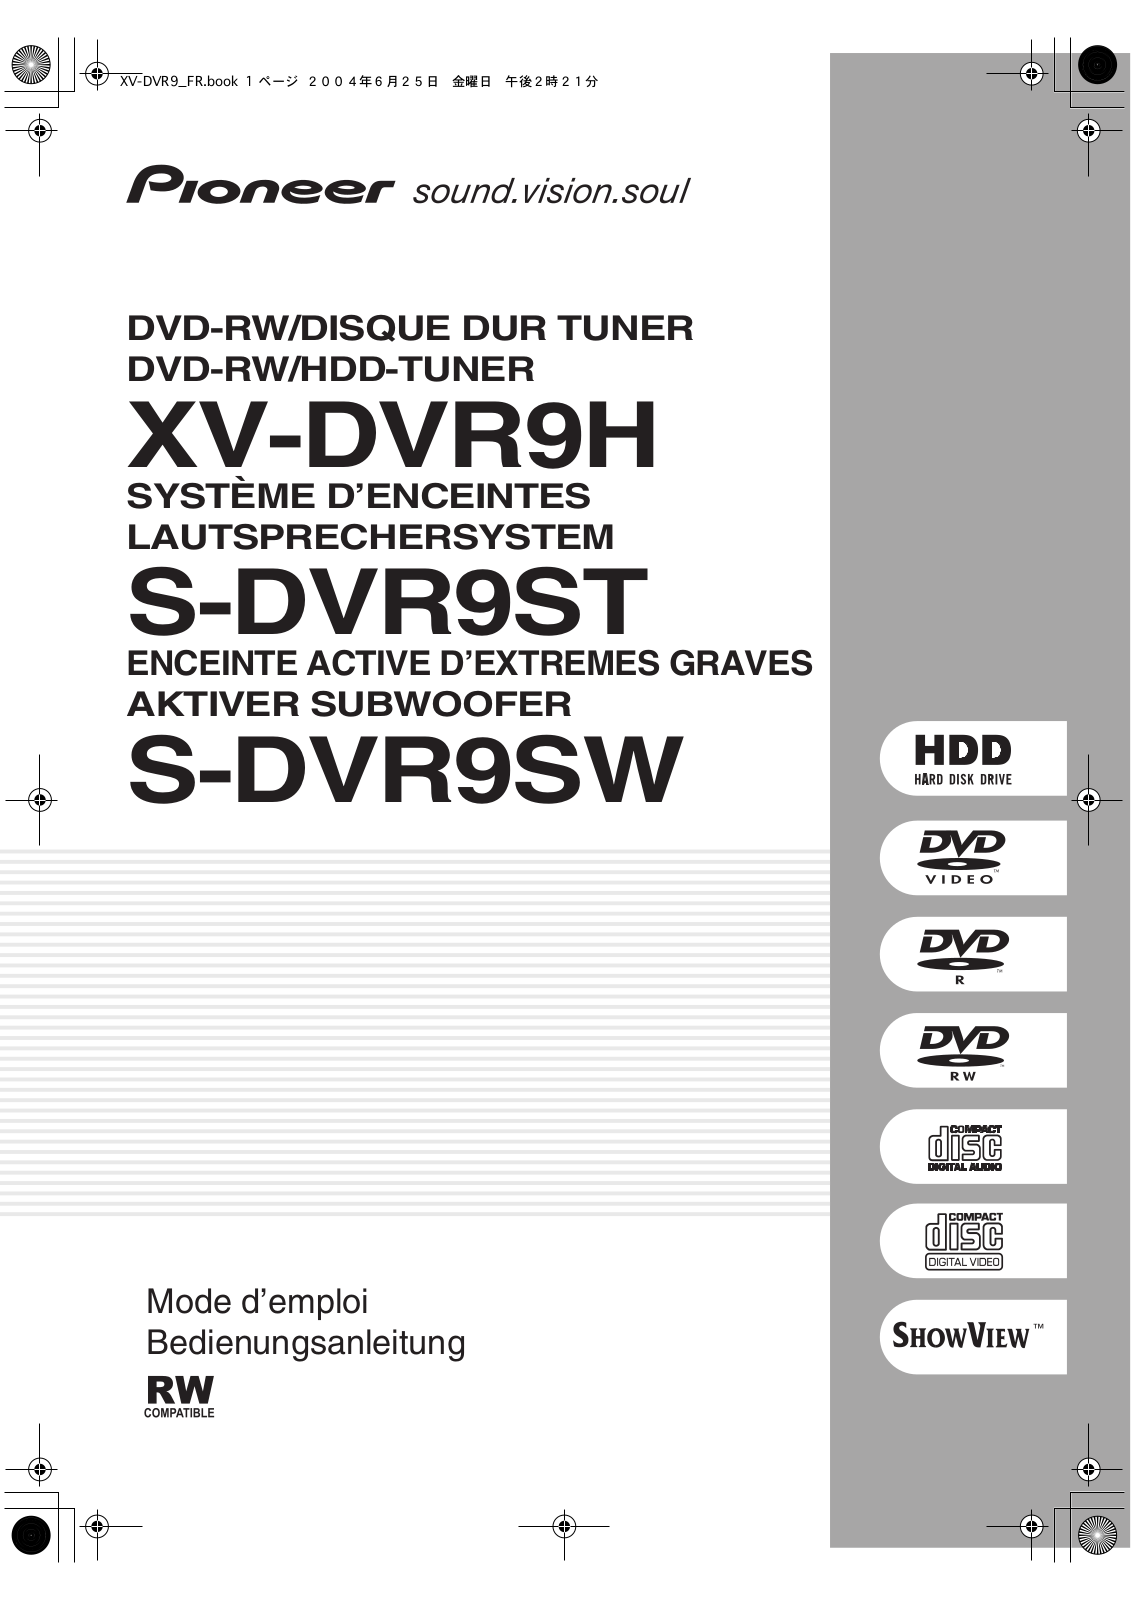 Pioneer XV-DVR9H, S-DVR9ST, S-DVR9SW Manual